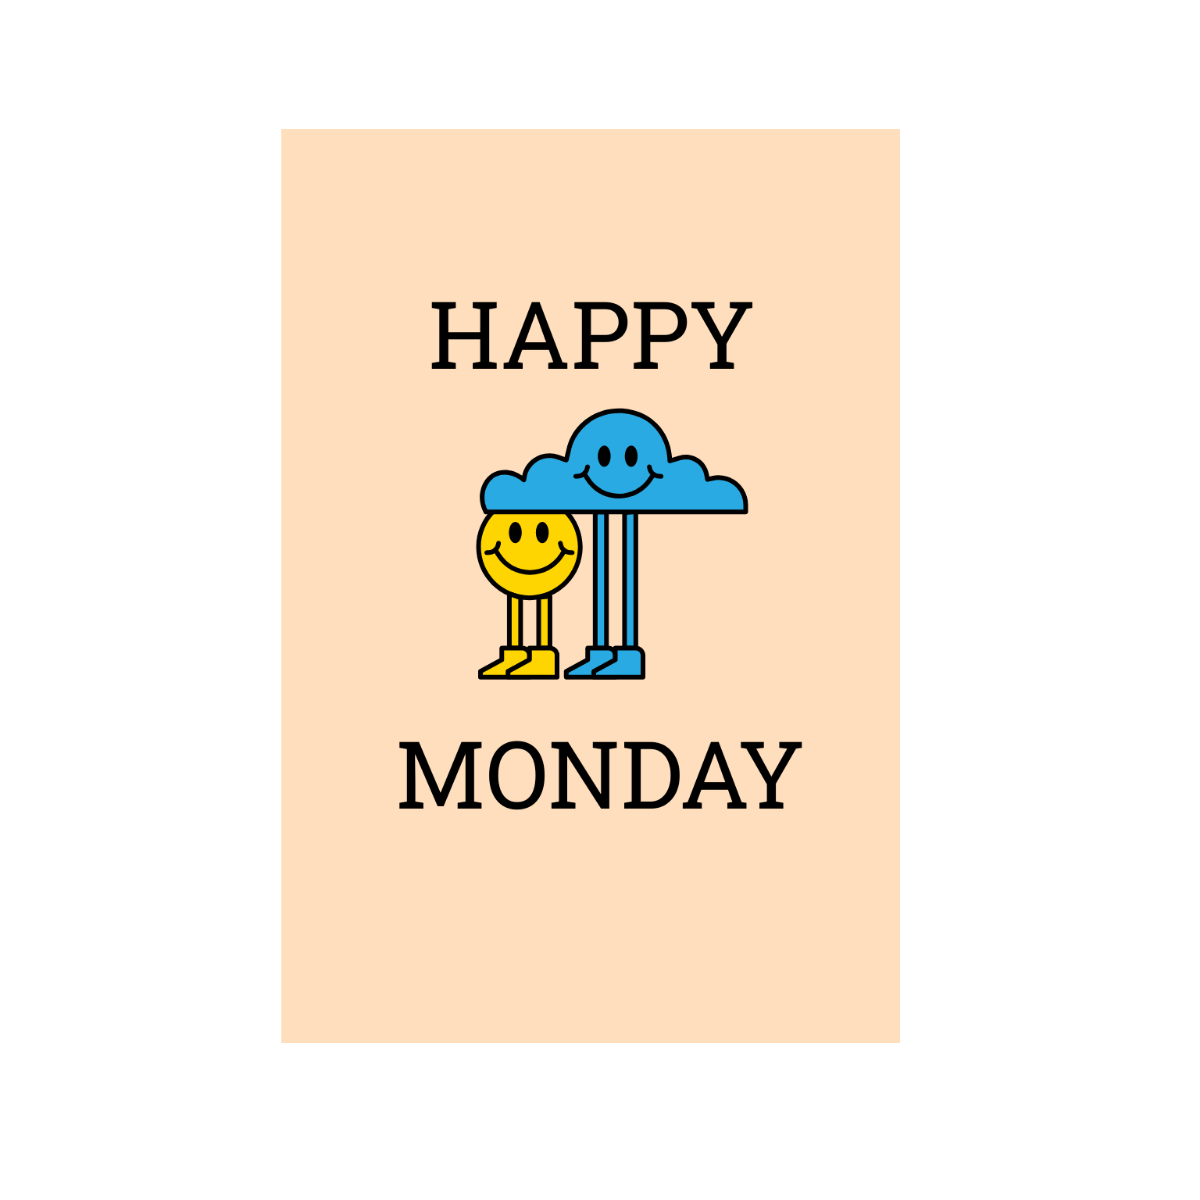 Happy Monday Card Vector